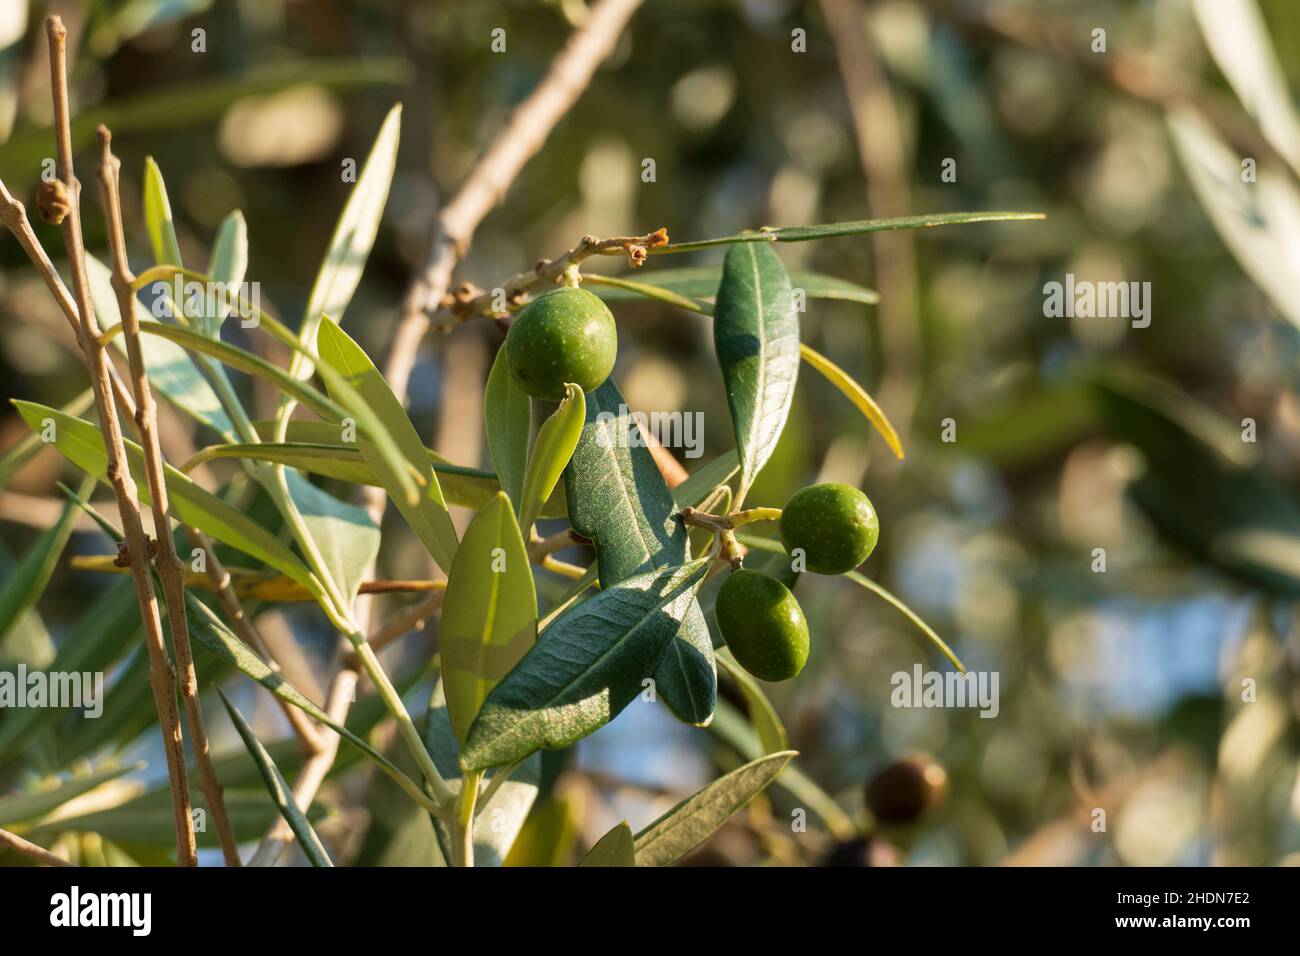 Oliven Früchte mit Blättern, hängen am Baum in einem Olivenhain Stock Photo